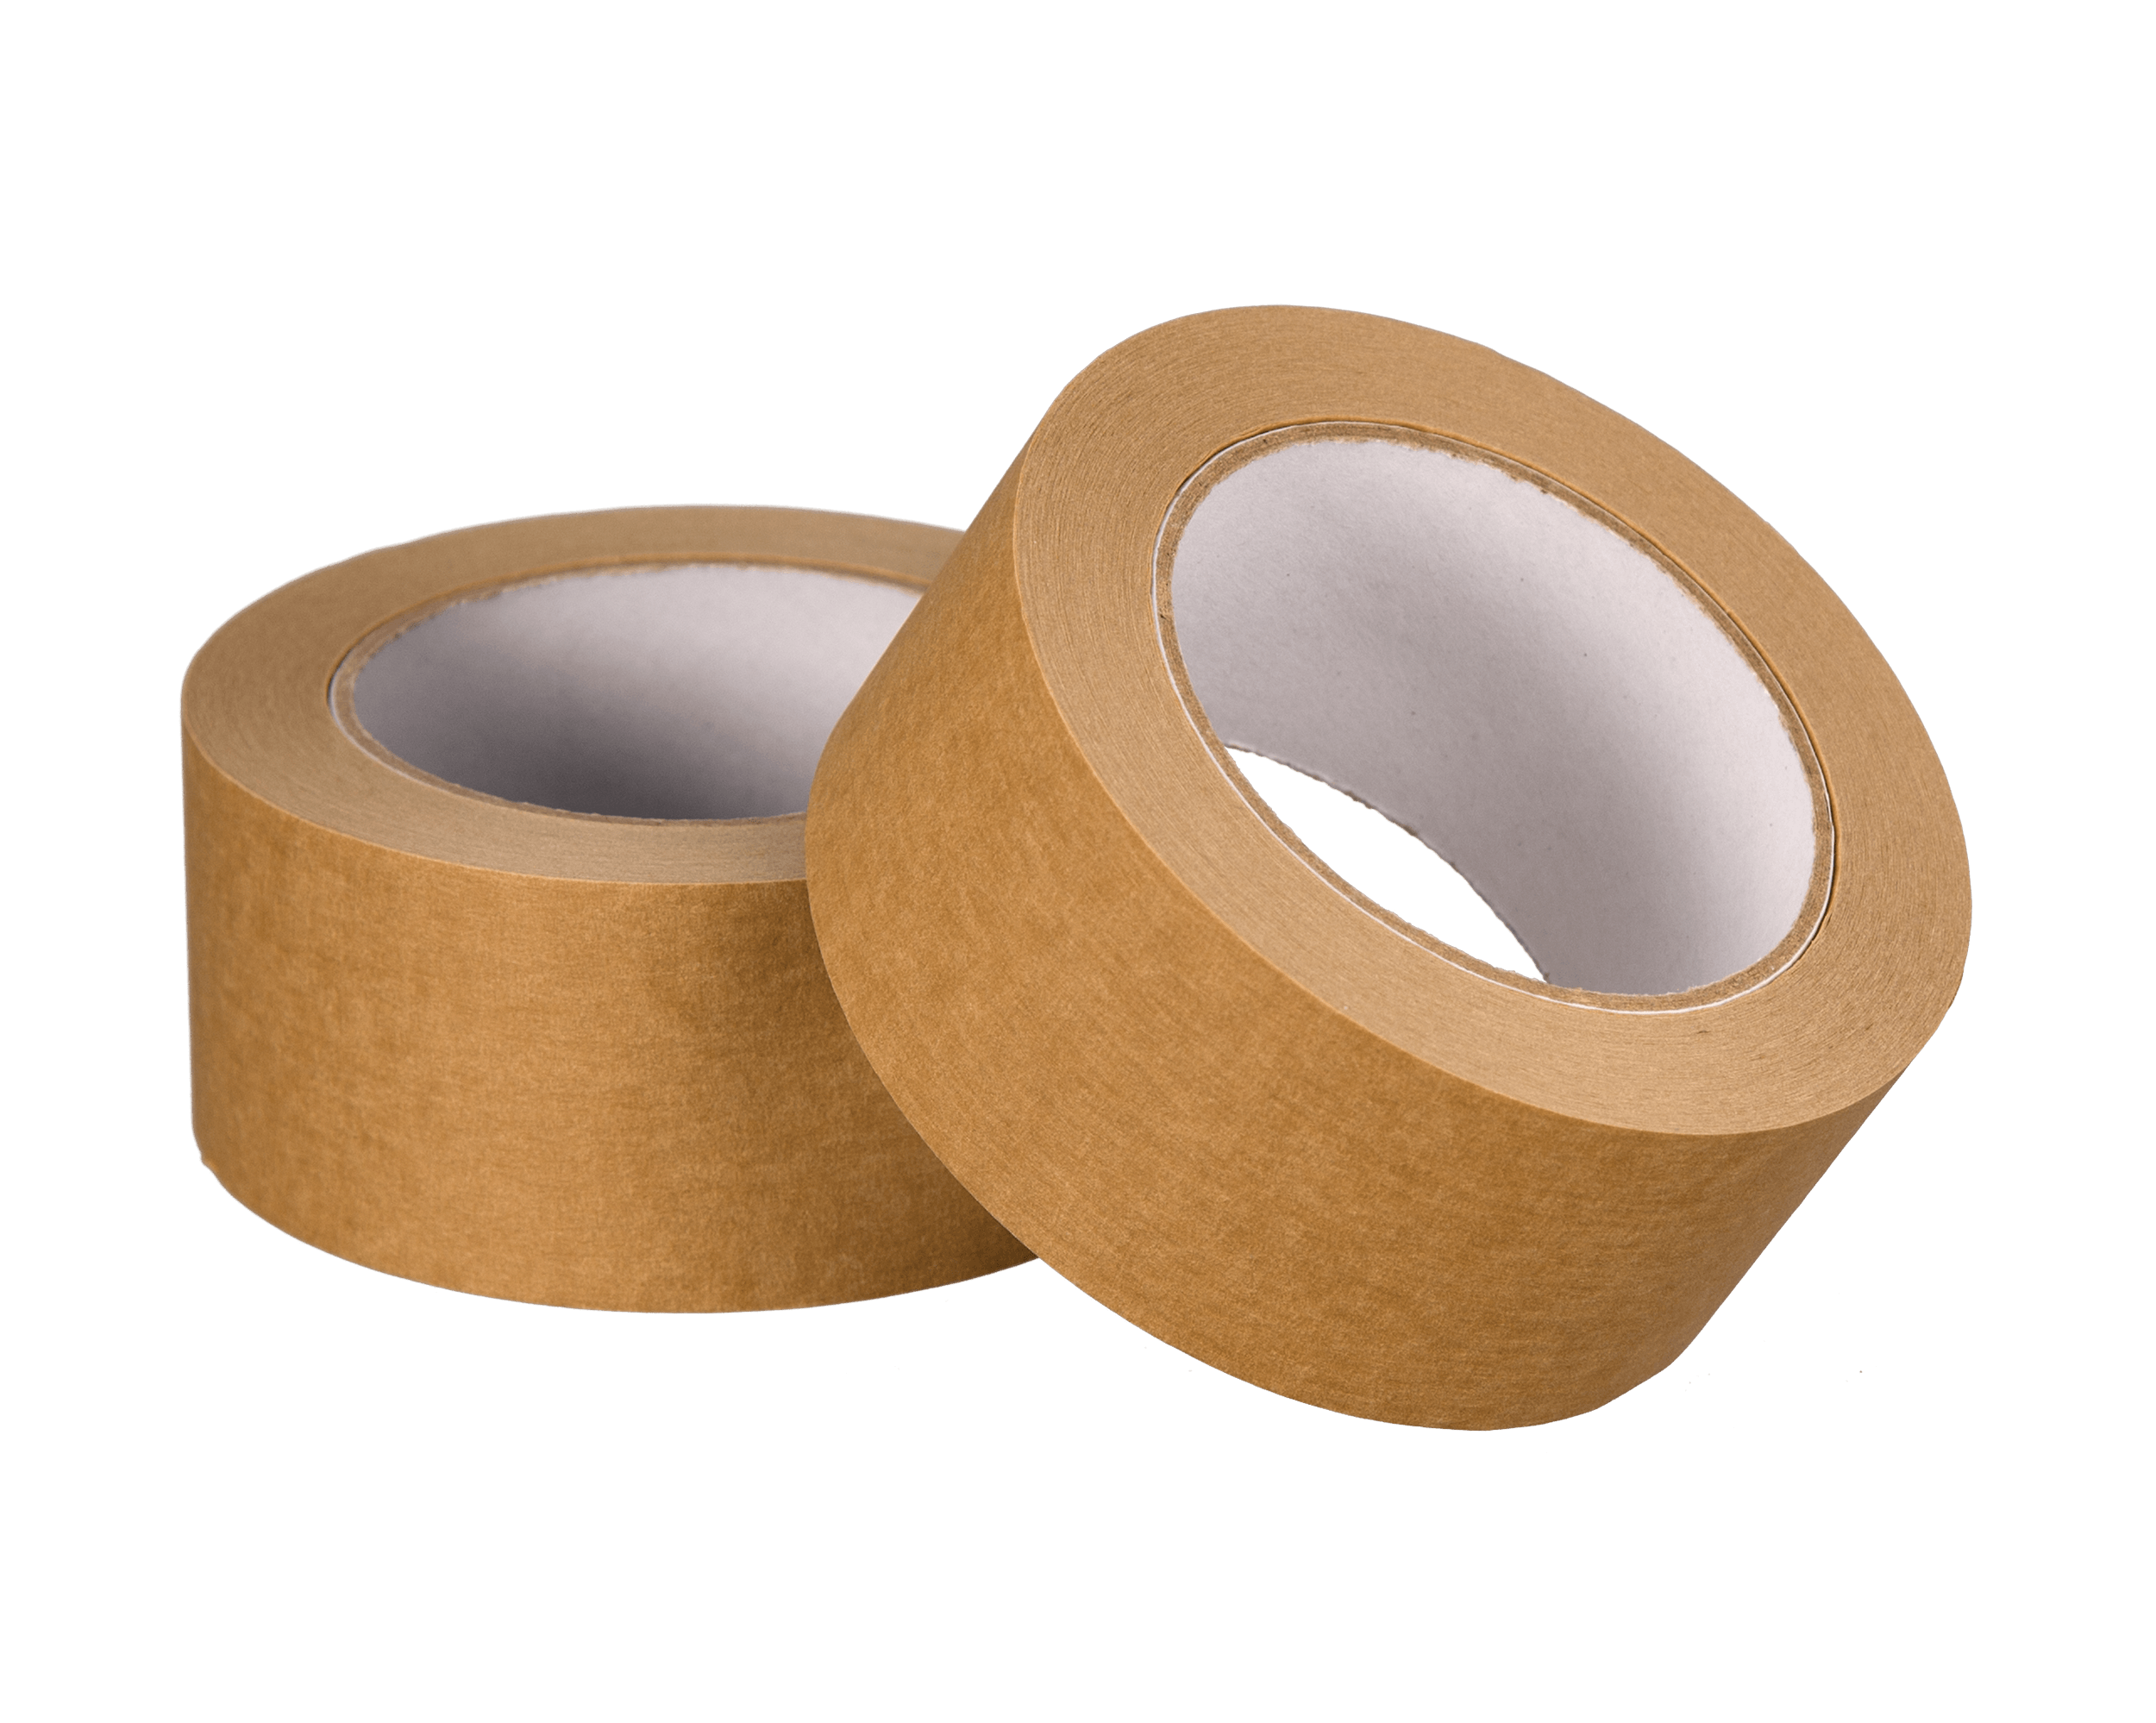 Ökopack Papier braun 50 mm x 50 m 3 Rollen Papierklebeband standard 